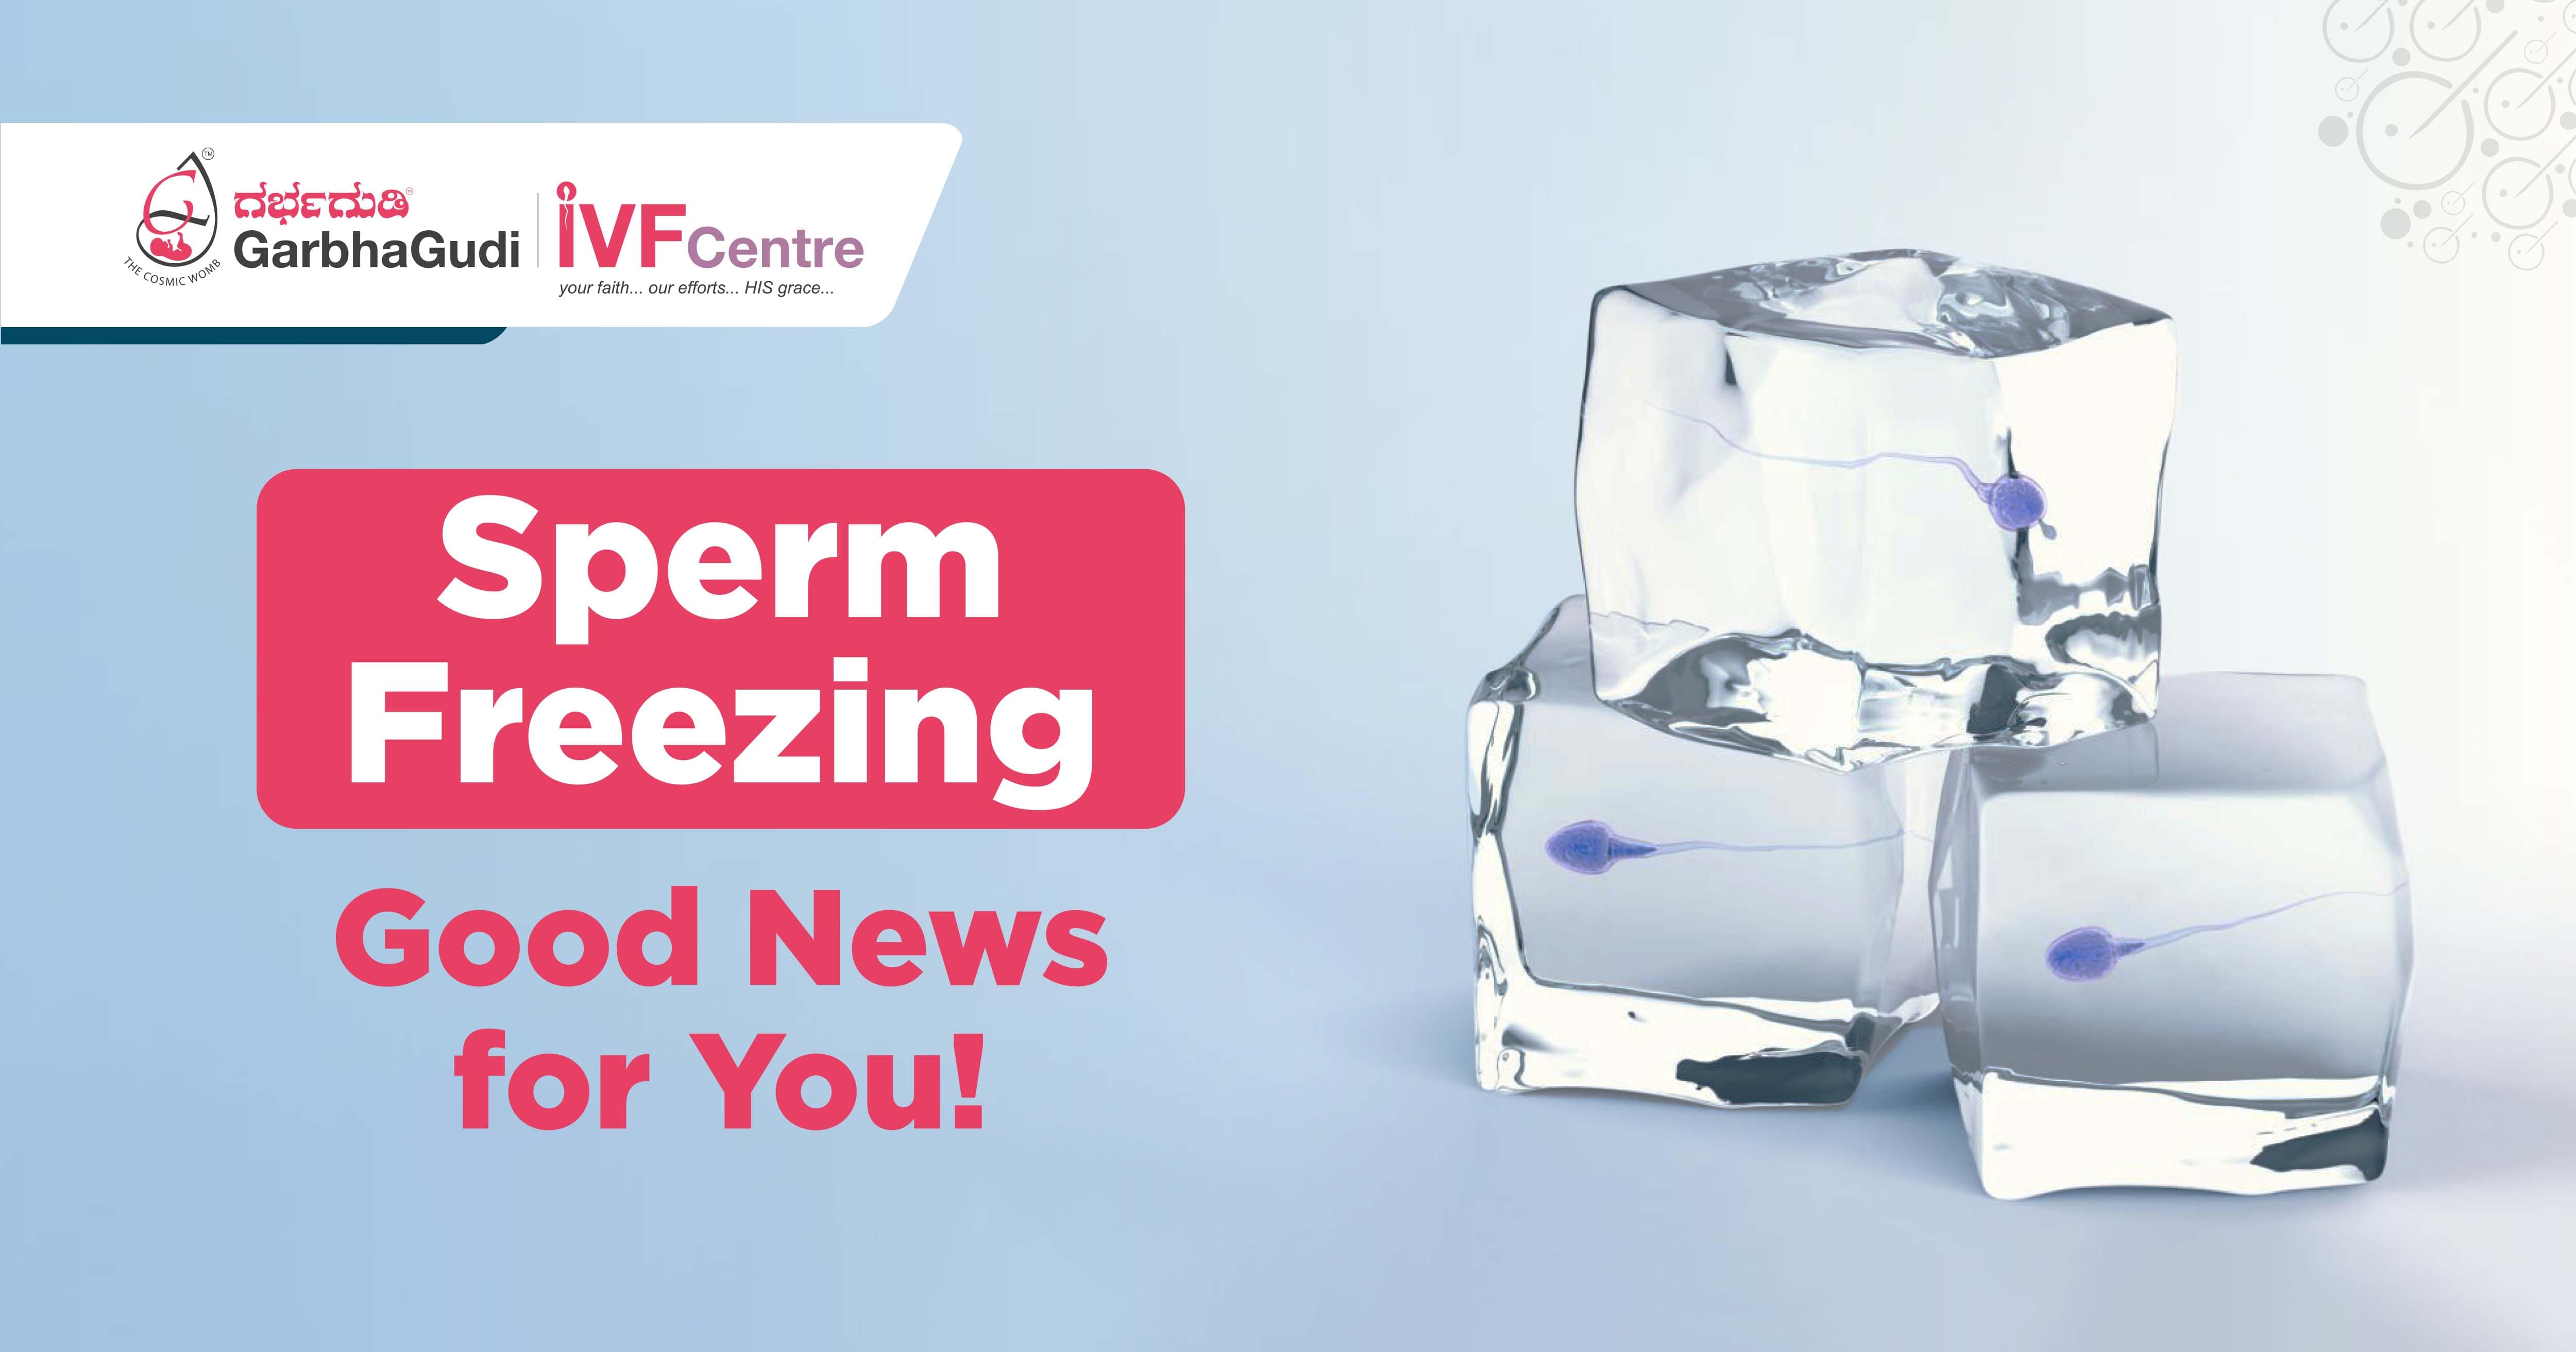 Sperm Freezing - A Good News for You!